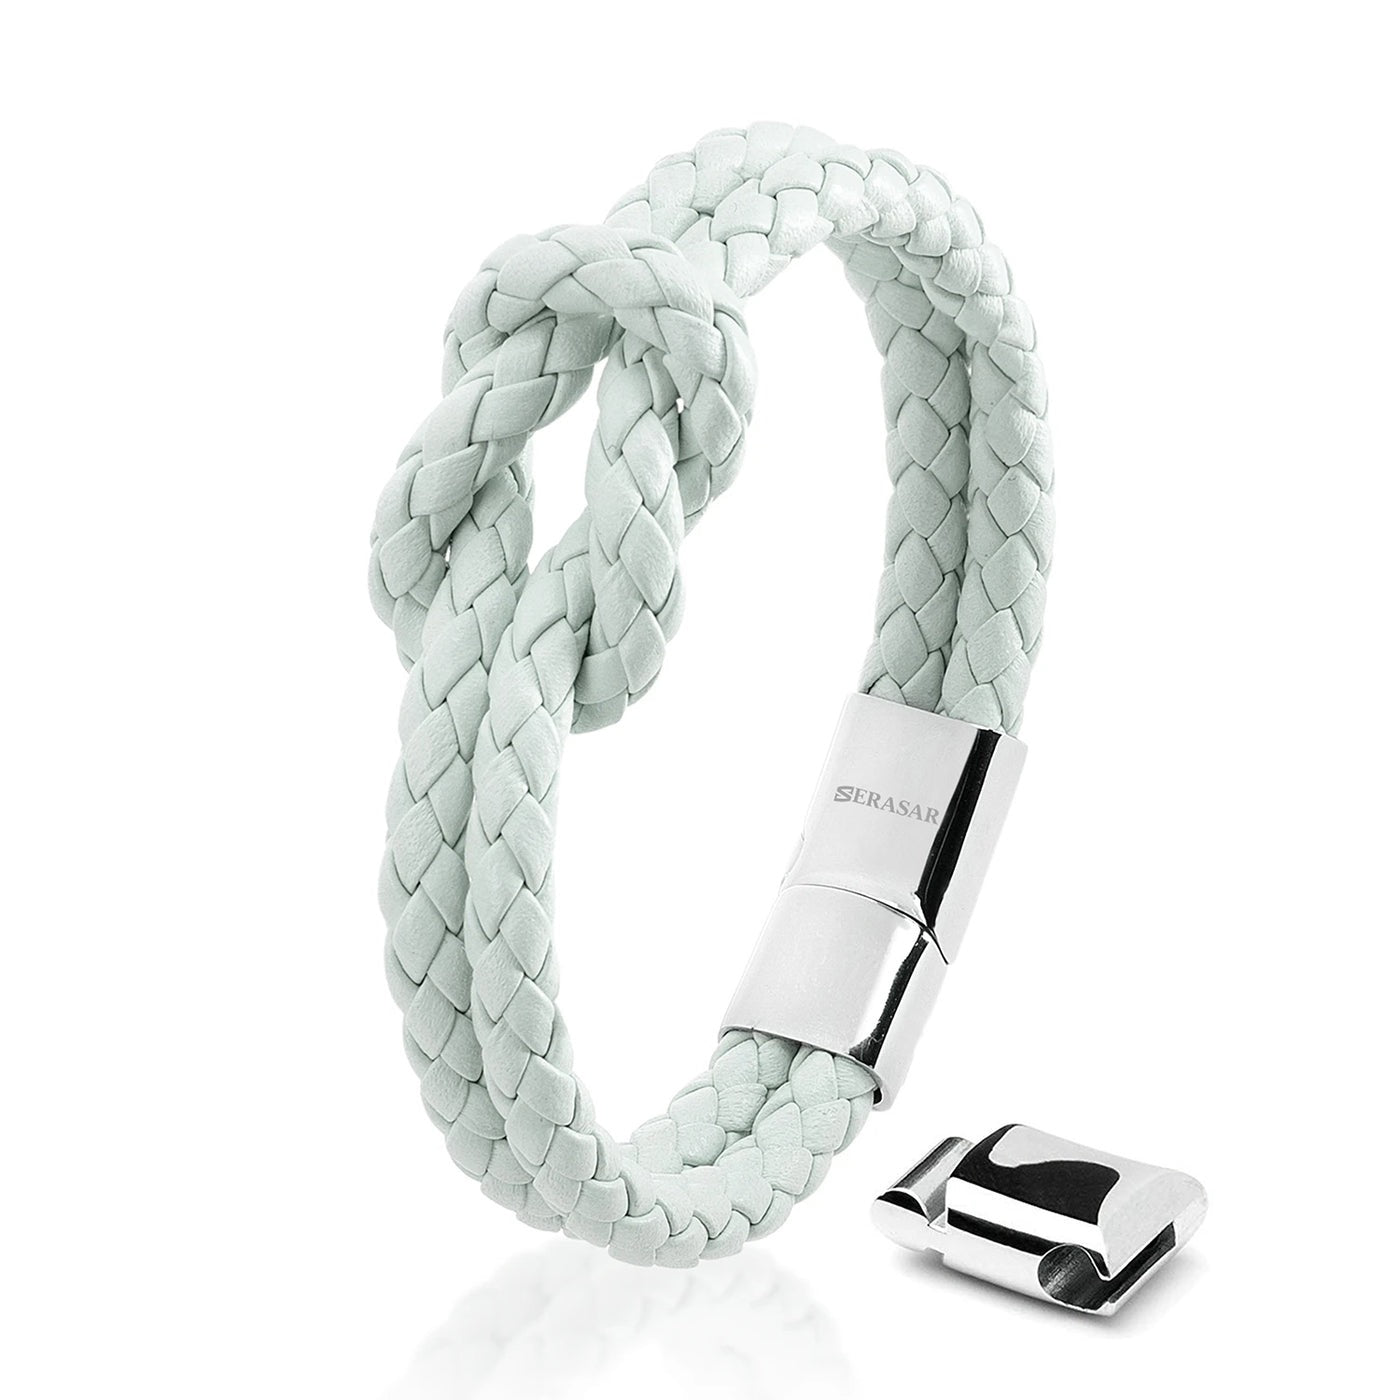 Armband "Knot" - Echtes Rindsleder, polierter Edelstahl (rostfrei) und ein starker Magnet-Verschluss - ROSA